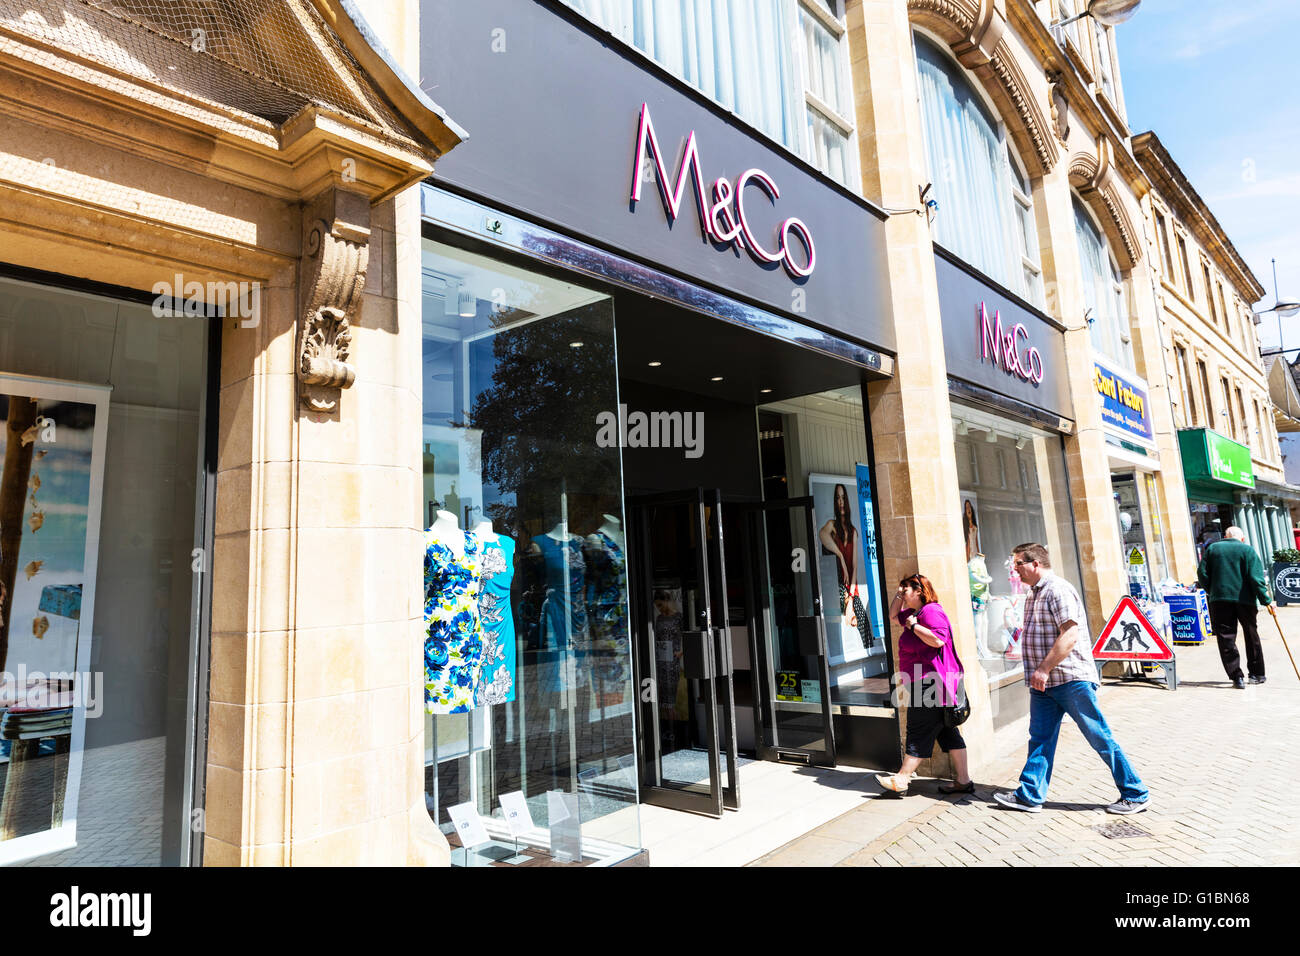 M&Co M & Co boutique sign store extérieur avant d'entrer les acheteurs boutiques Stamford town Lincolnshire UK Angleterre villes anglaises Banque D'Images